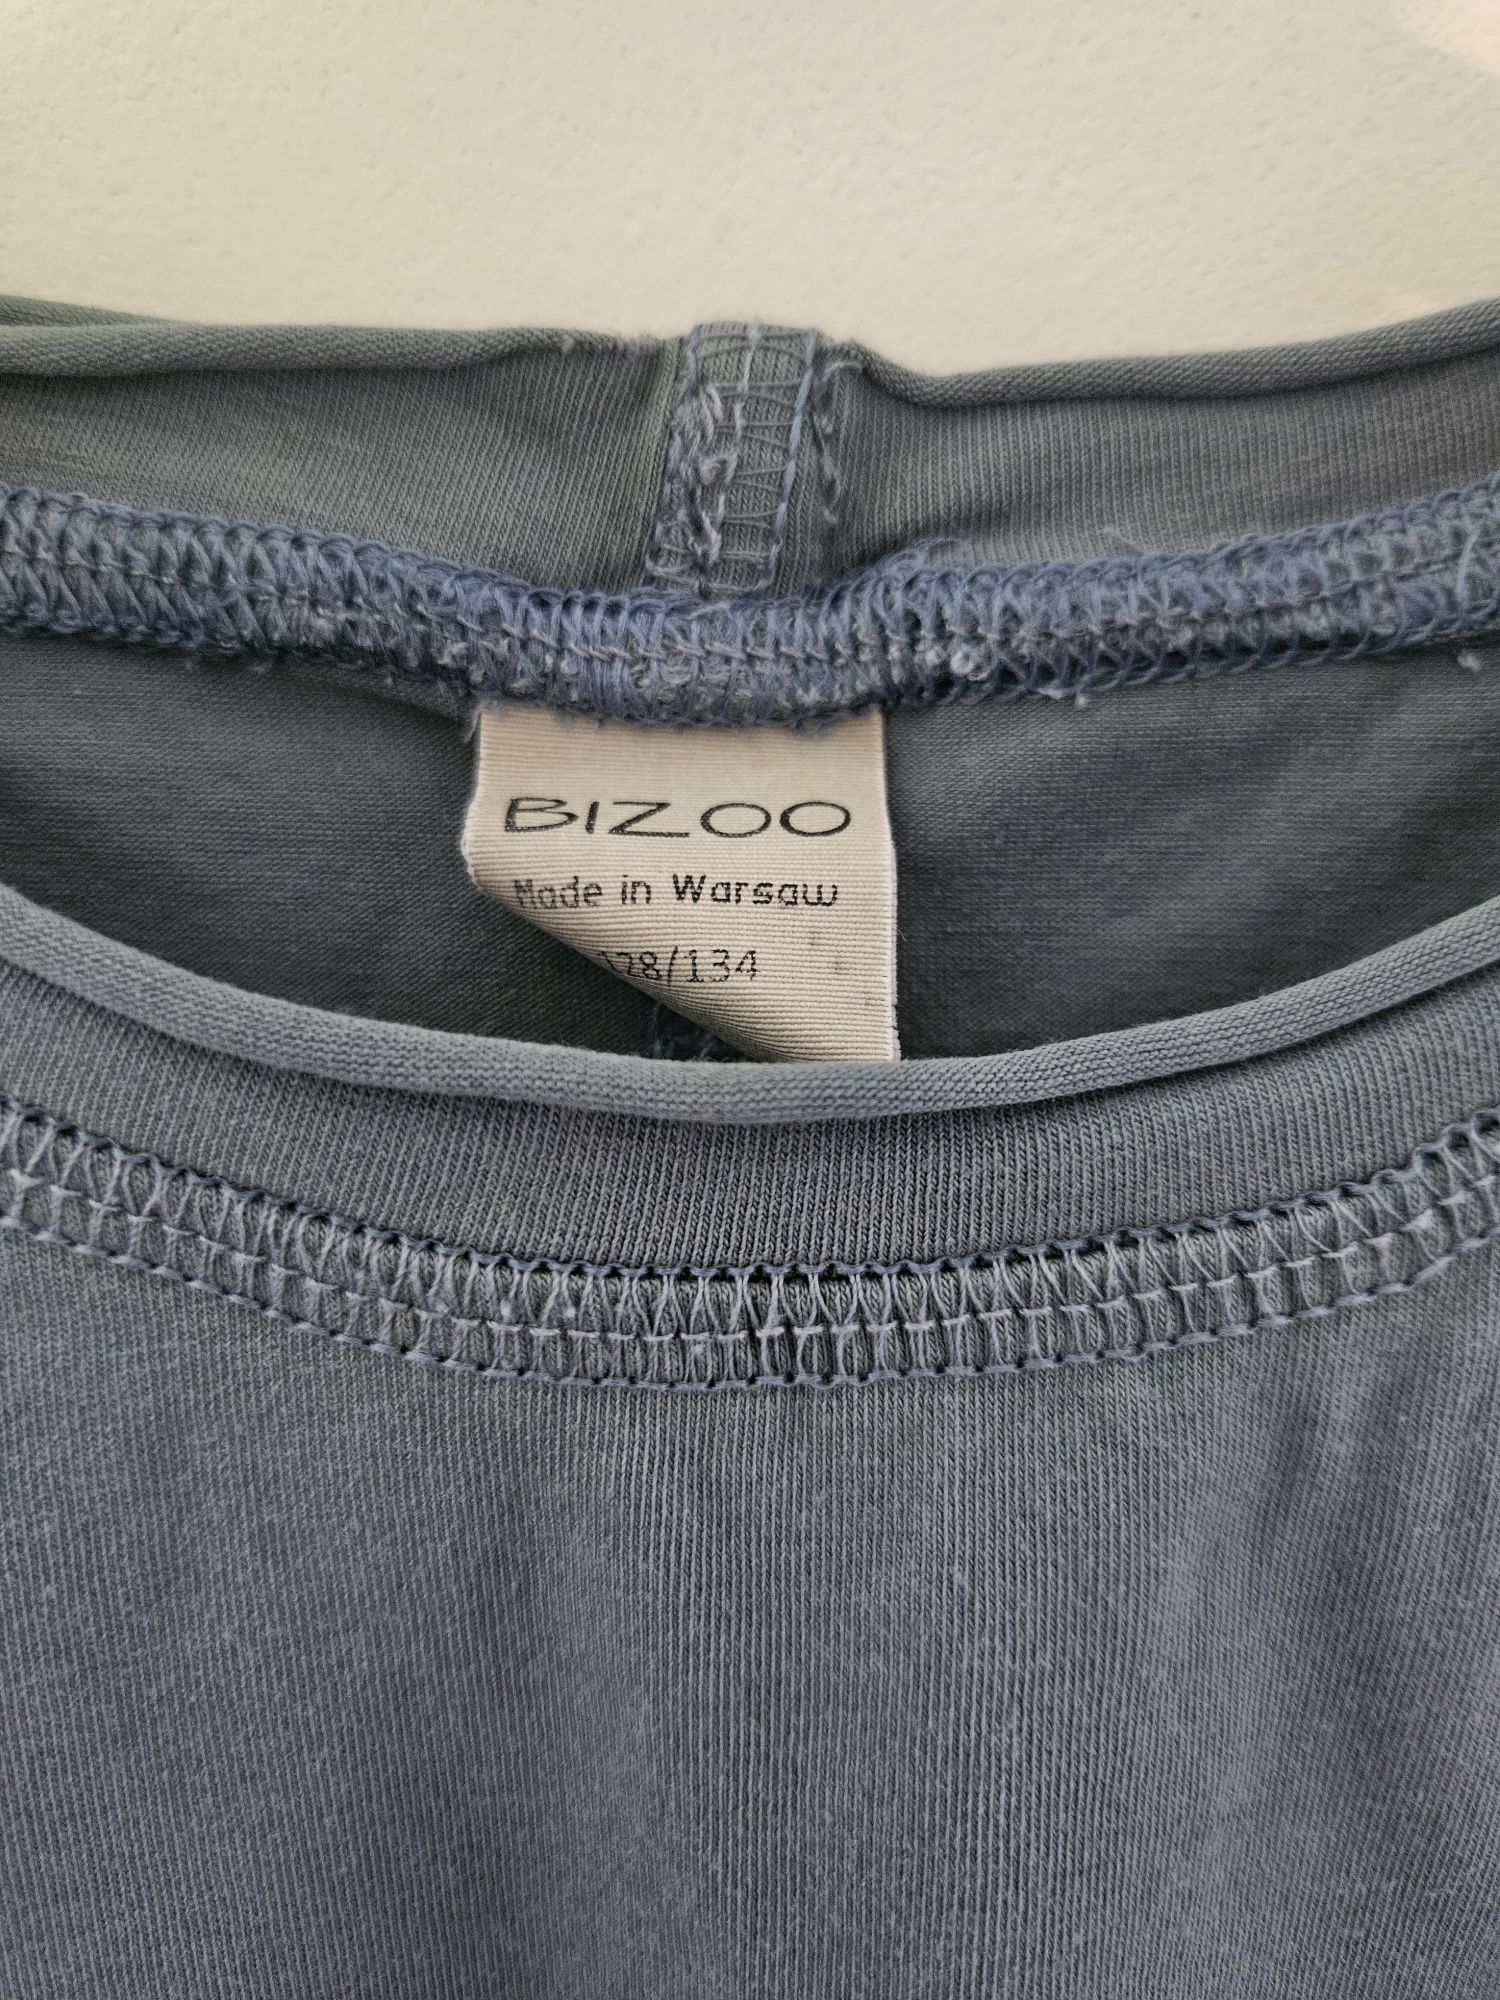 T-shirt bluzka koszulka polska marka Bizoo